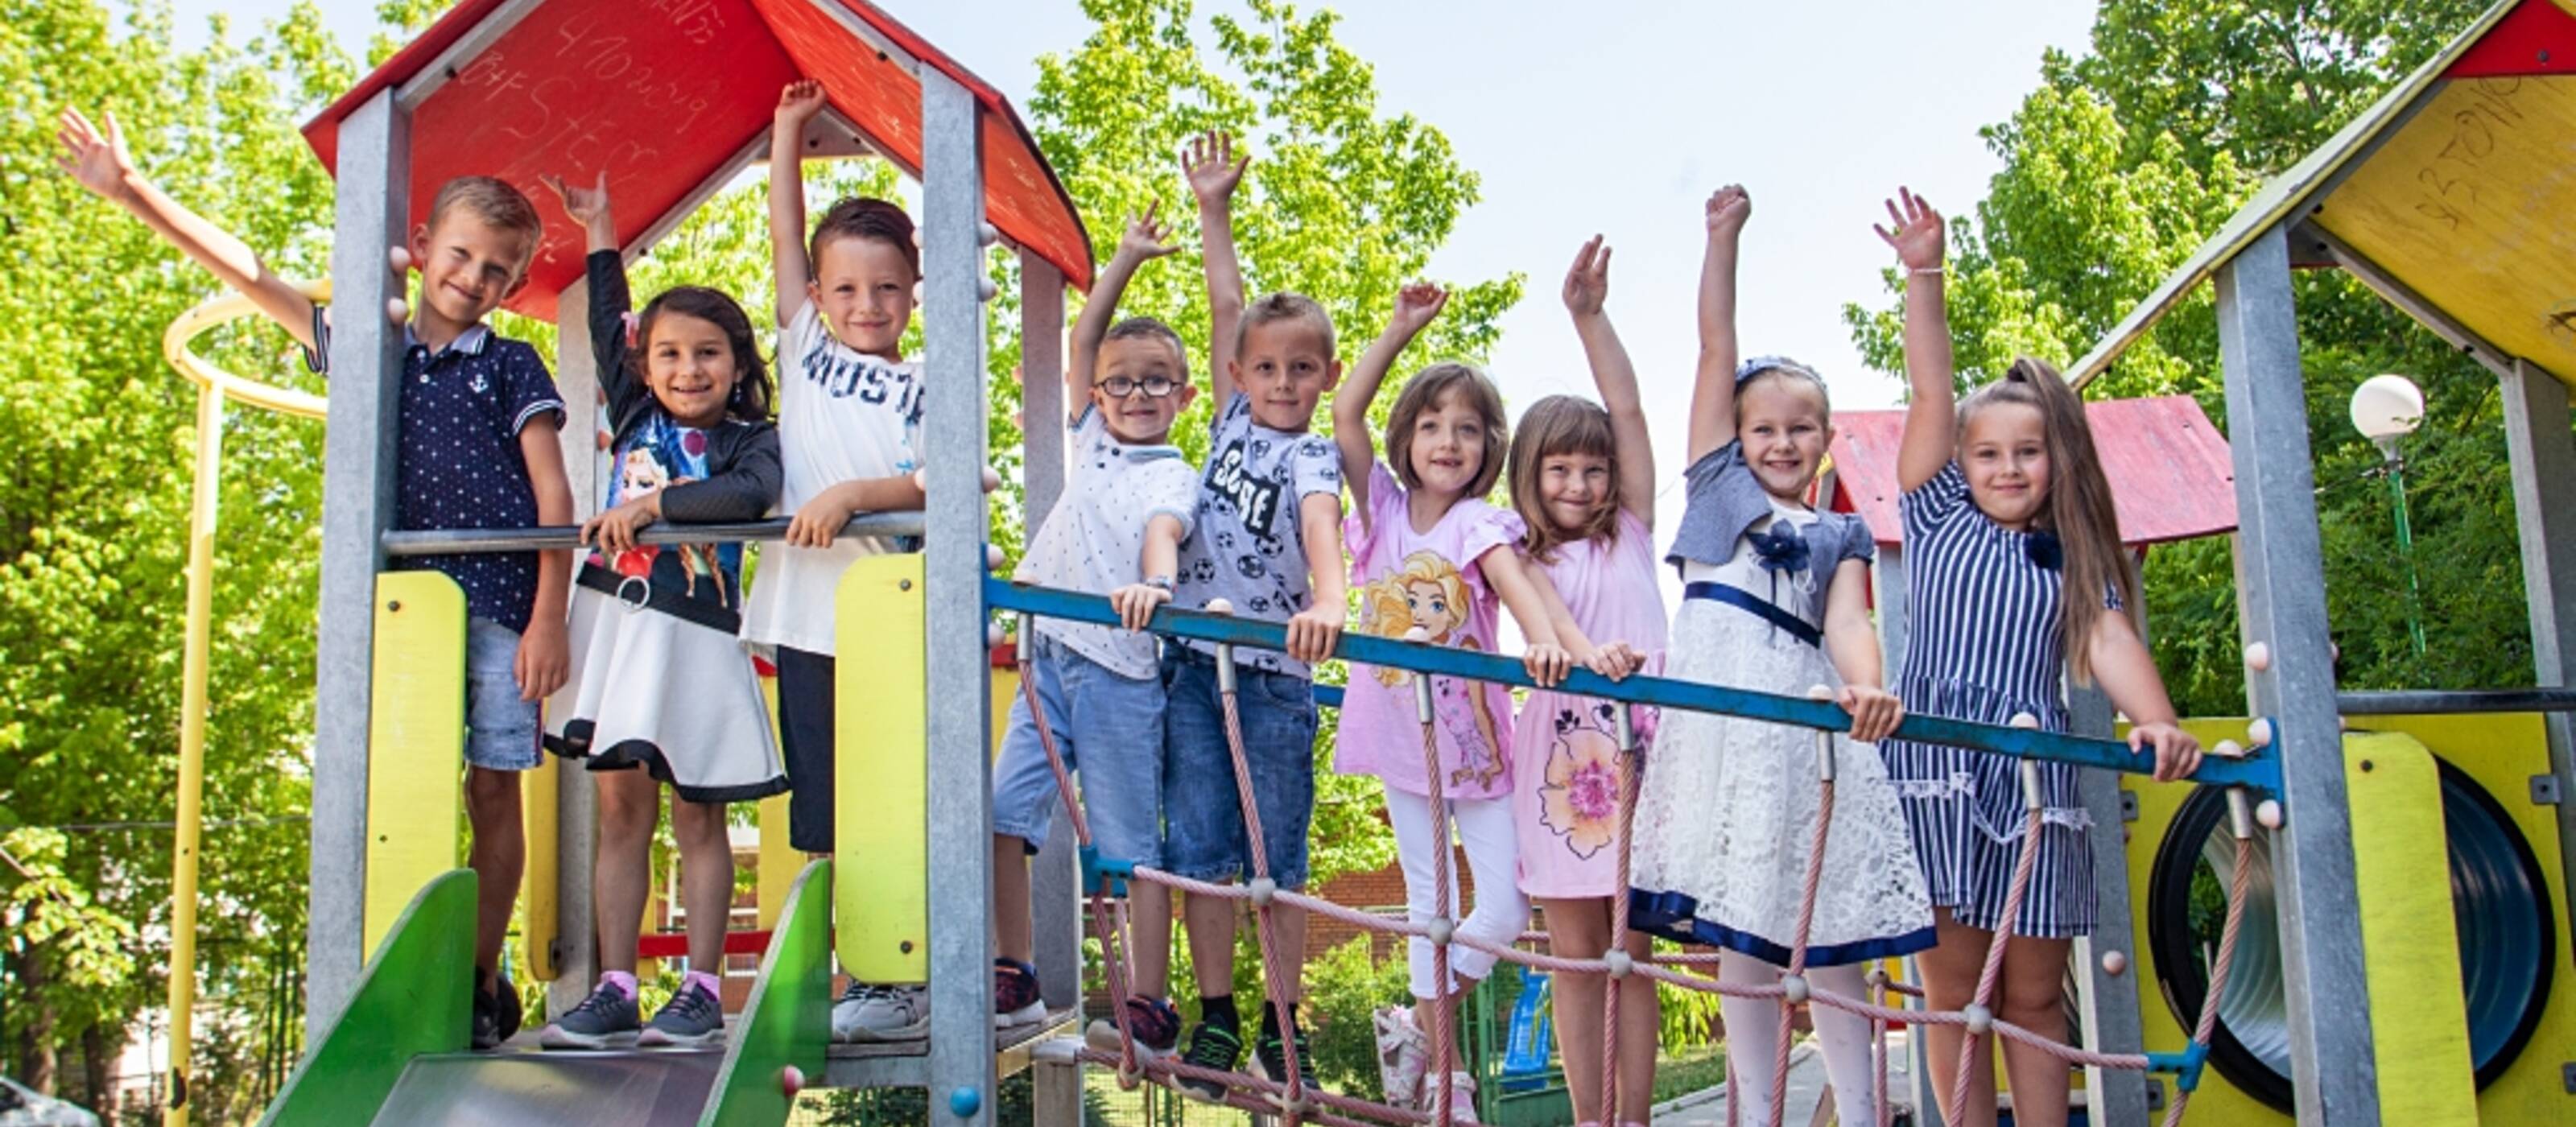 Neun Kinder winken lachend von einem Rutschbahnturm auf einem Spielplatz.